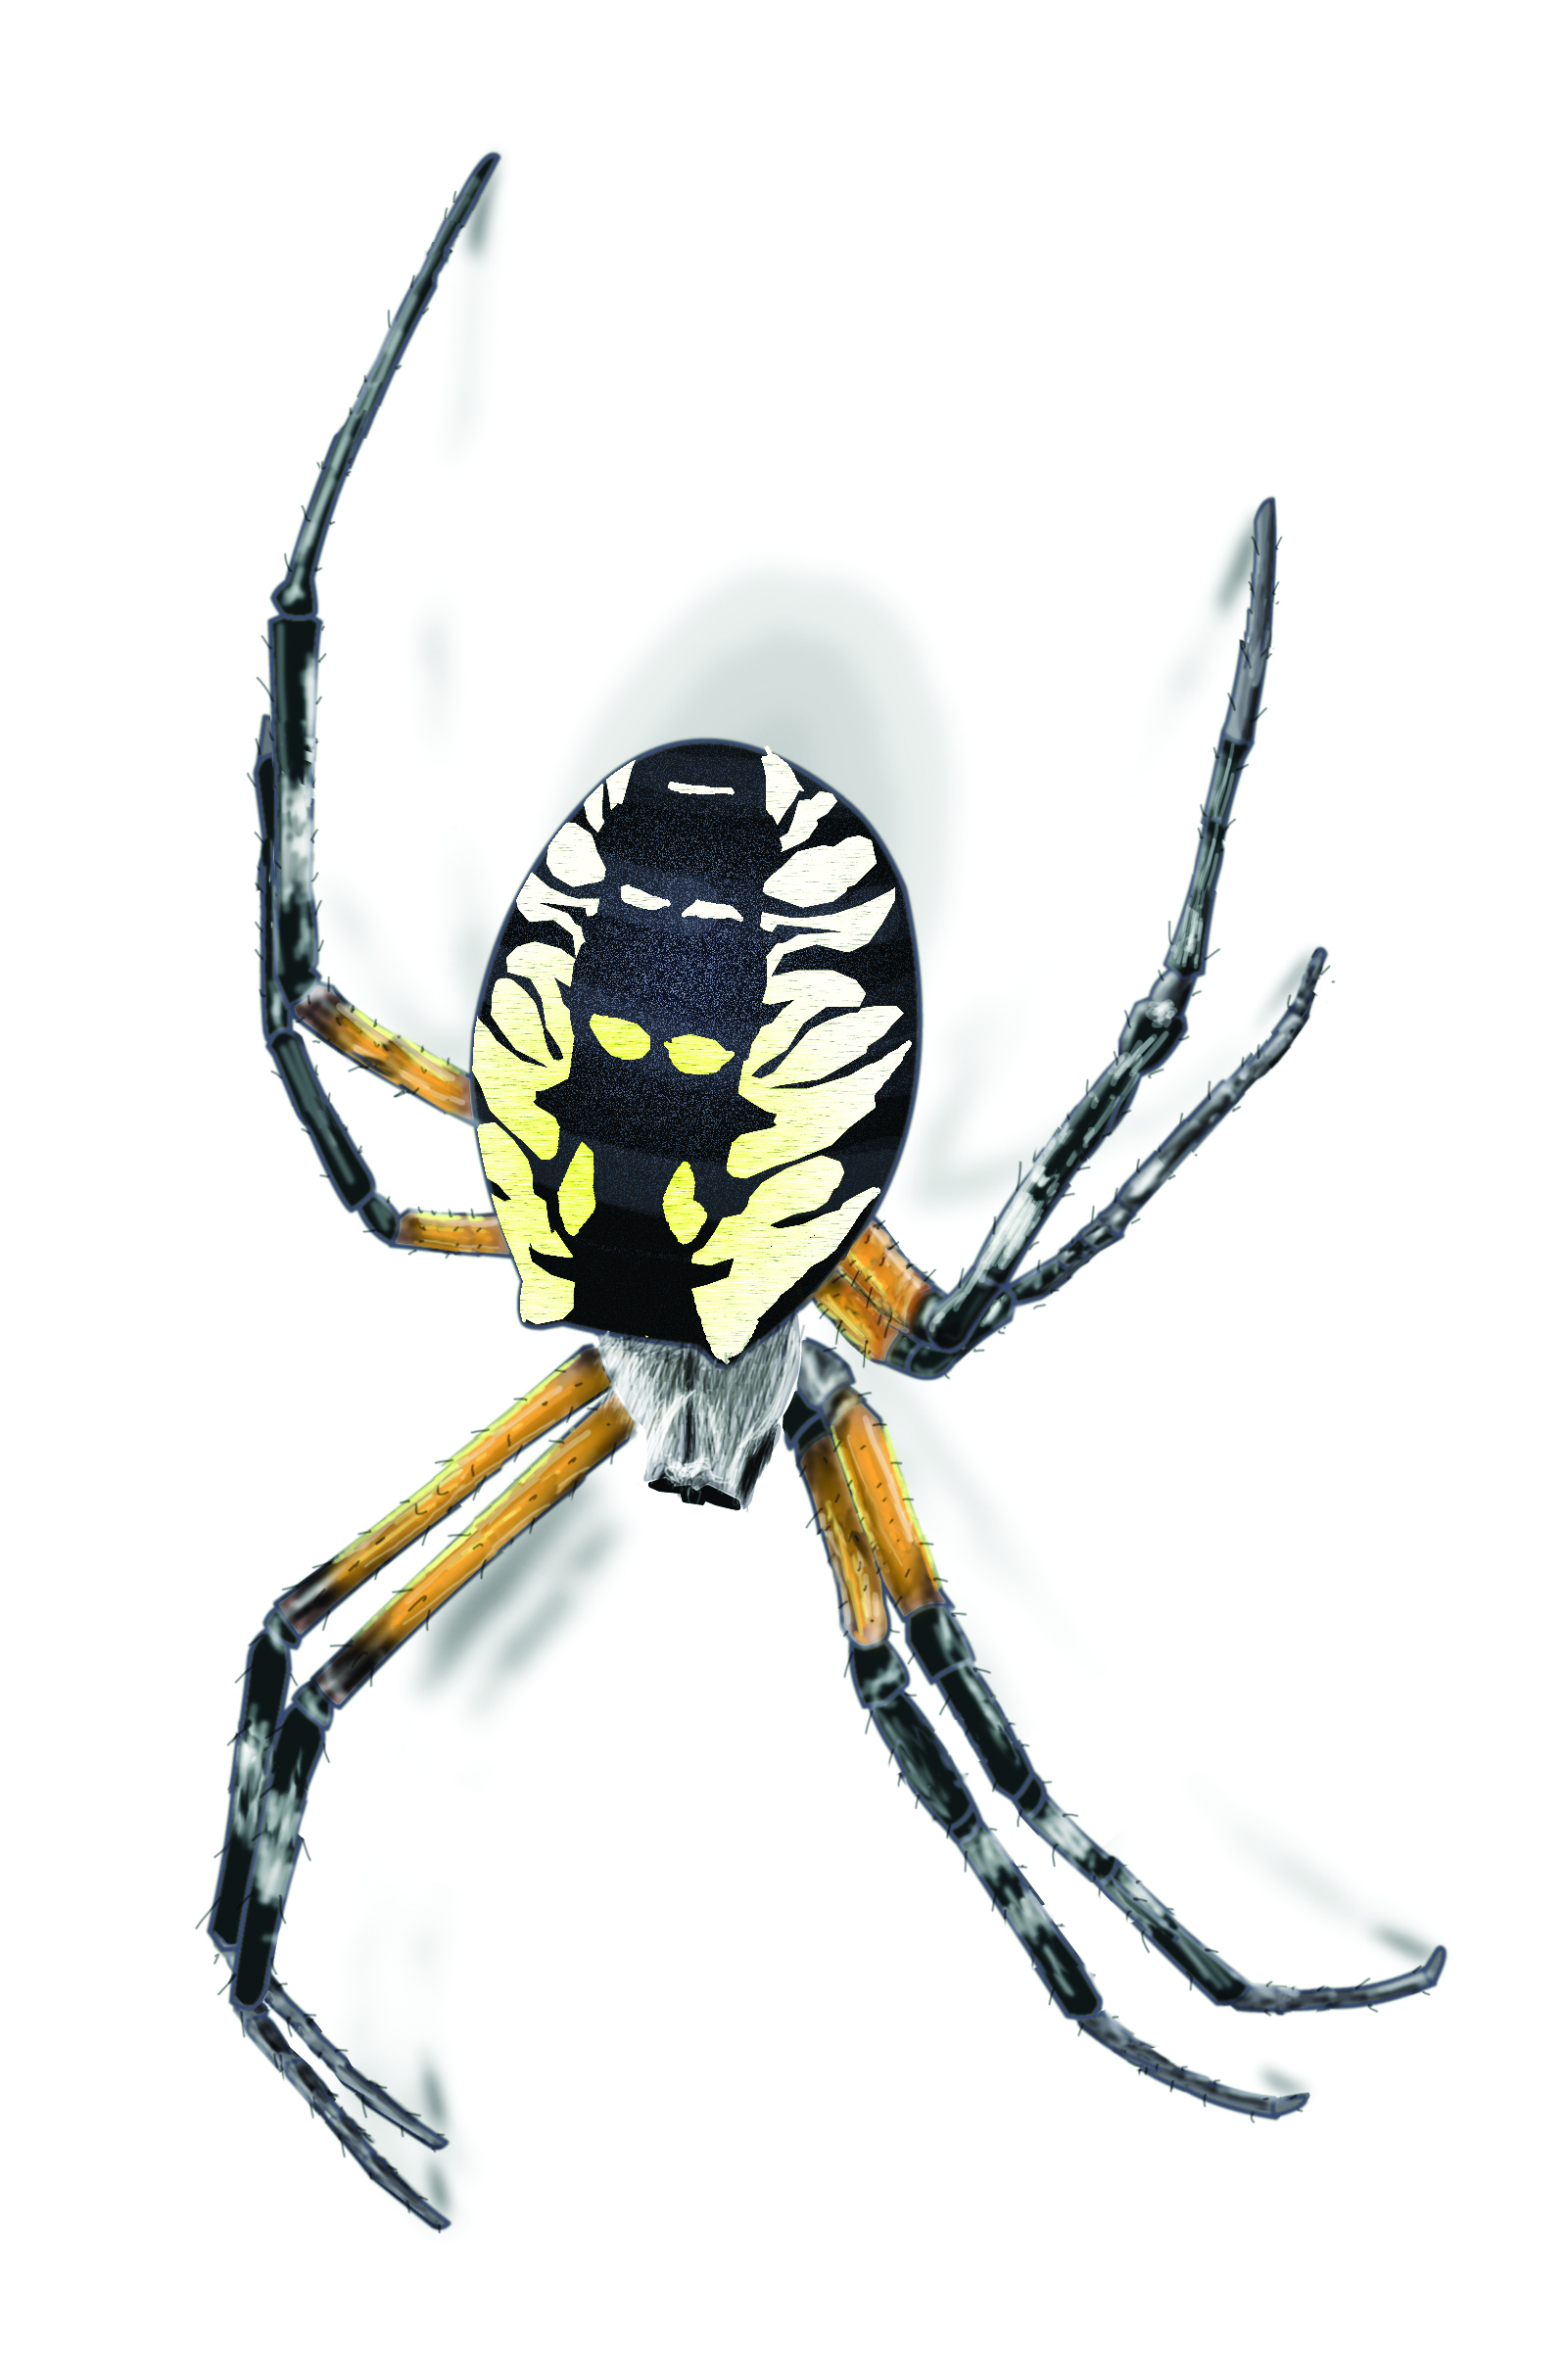 Garden Spider Facts & Control: Get Rid of Garden Spiders